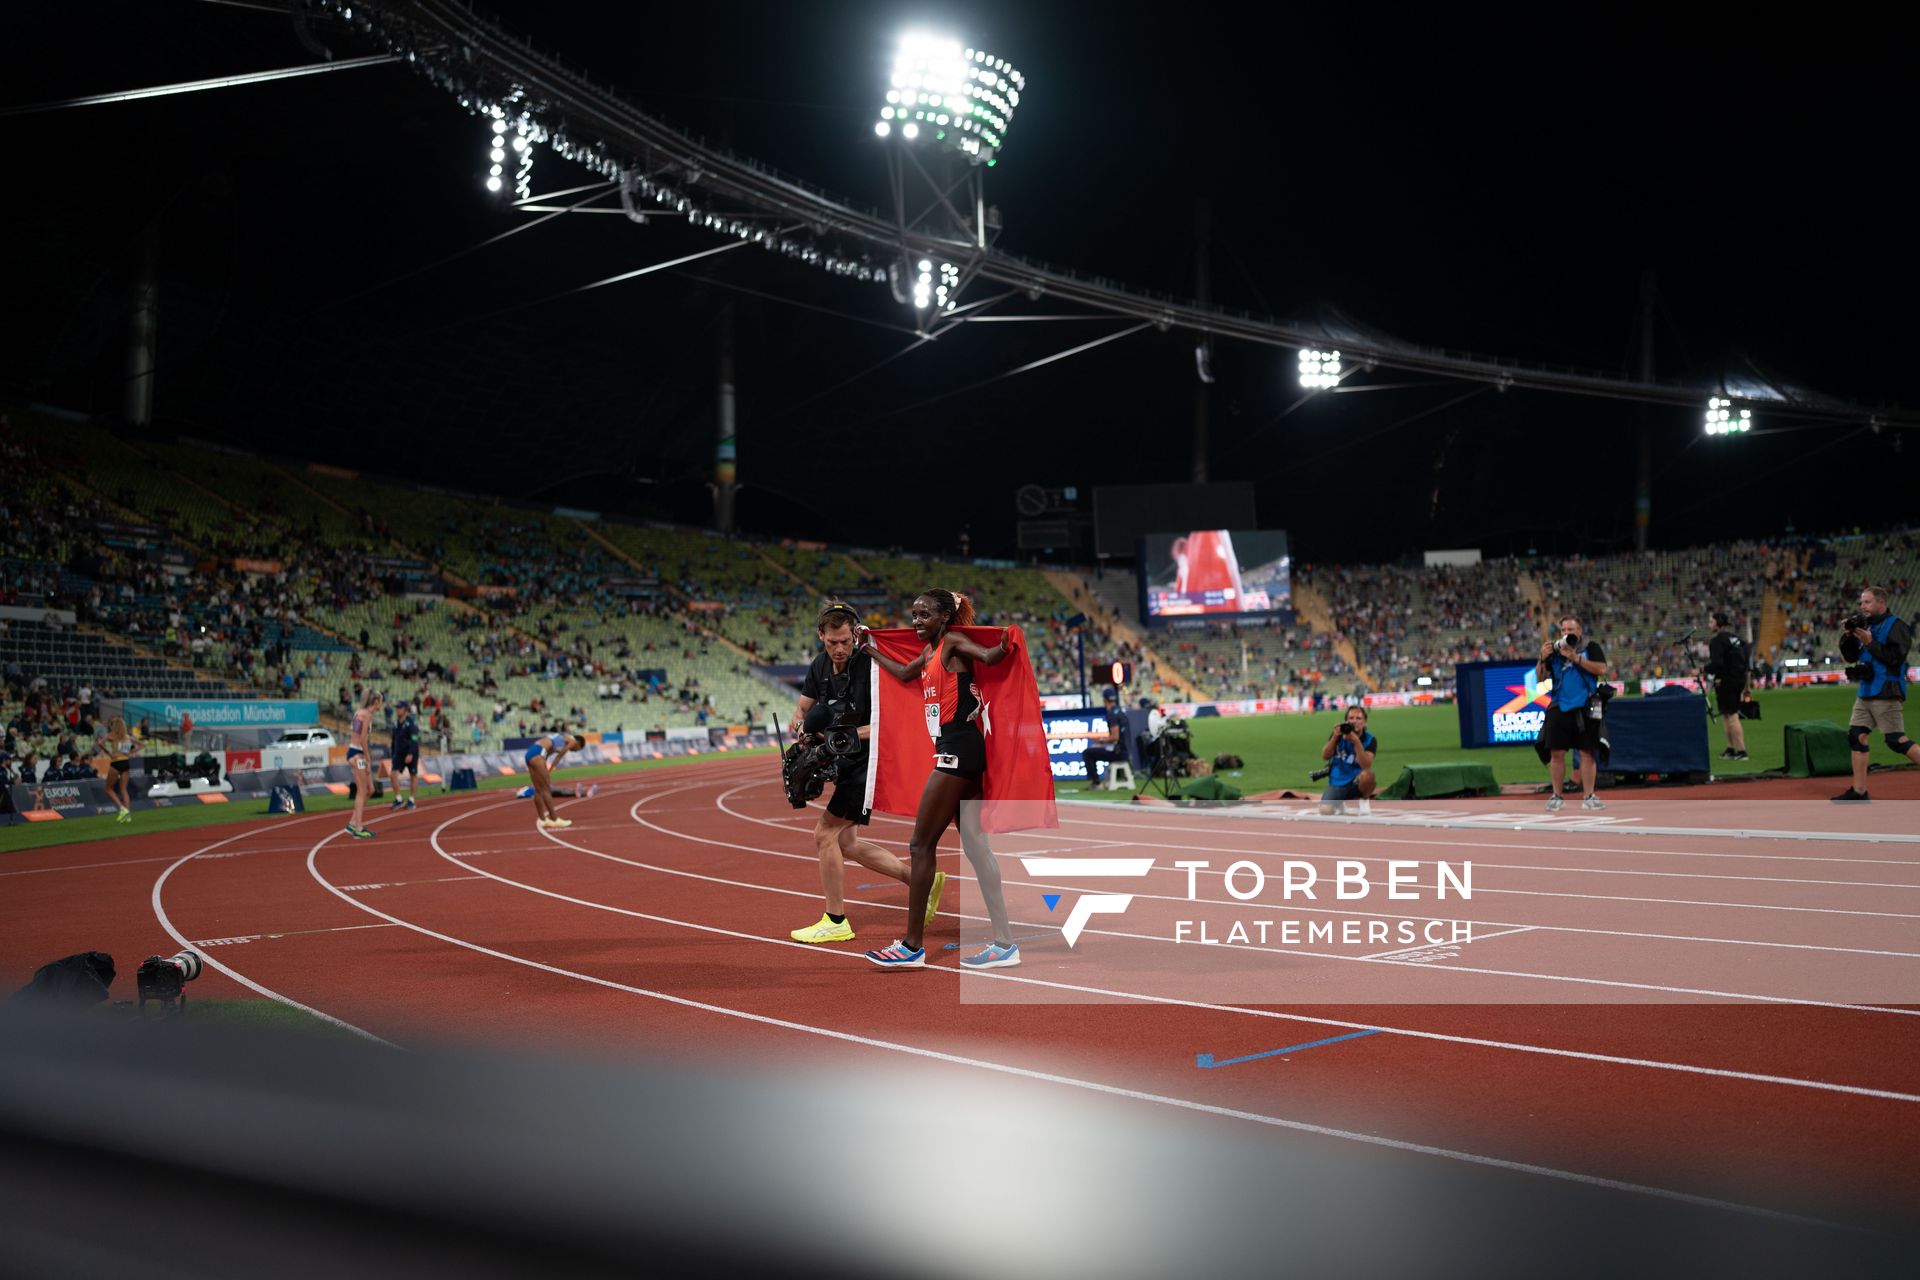 Yasemin Can (TUR) gewinnt die 10000m der Frauen am 15.08.2022 bei den Leichtathletik-Europameisterschaften in Muenchen